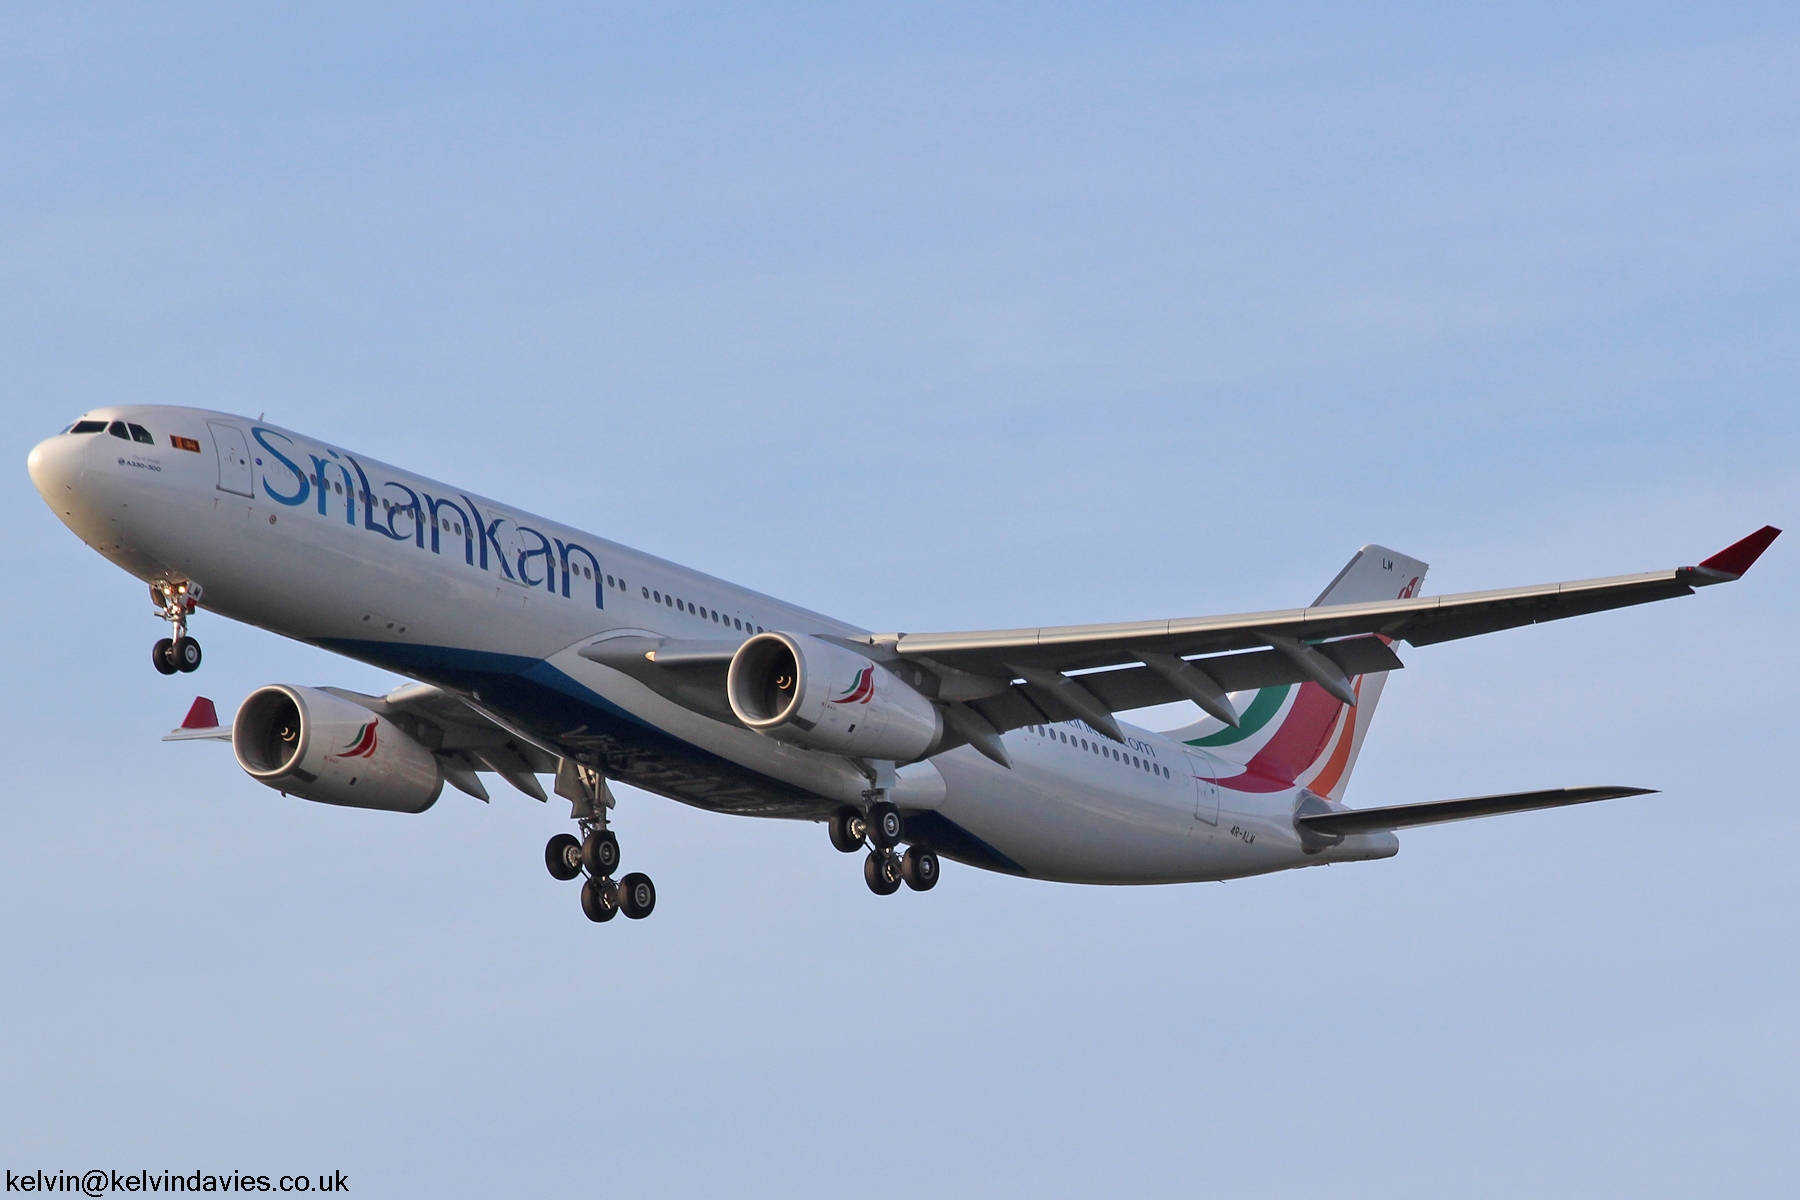 SriLankan Airlines A330 4R-ALM